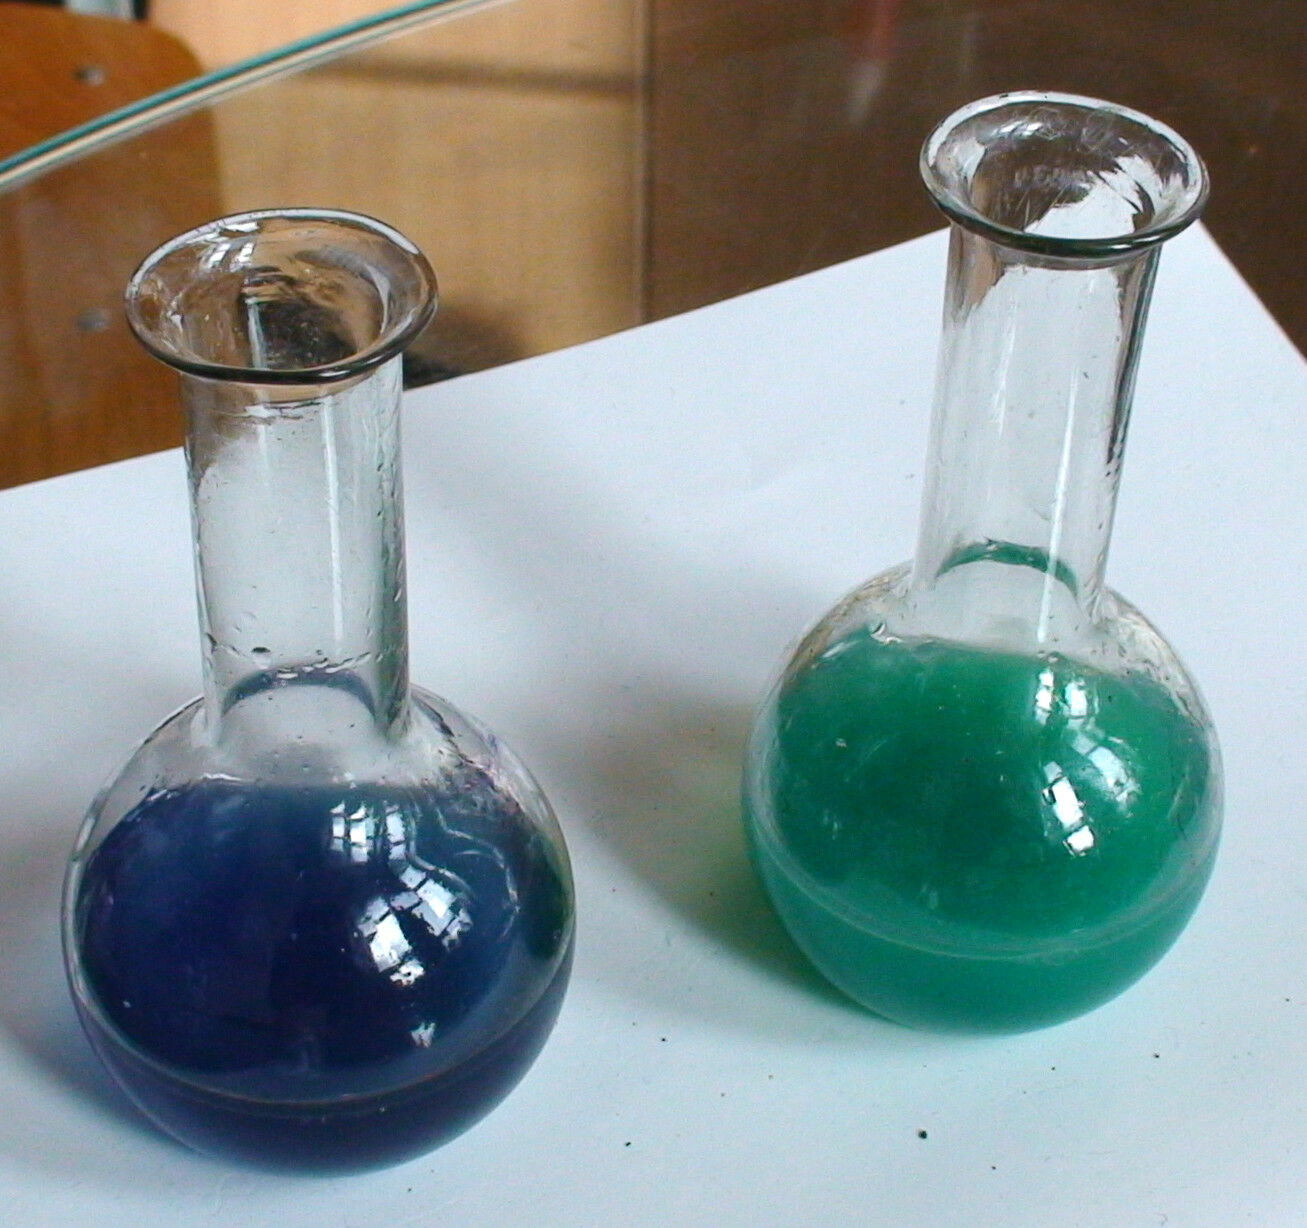 Хлорид меди класс неорганических соединений. Хлорид меди 2 цвет раствора. Хлорид меди цвет раствора. Хлорид меди раствор. Хлорид меди 1 цвет.